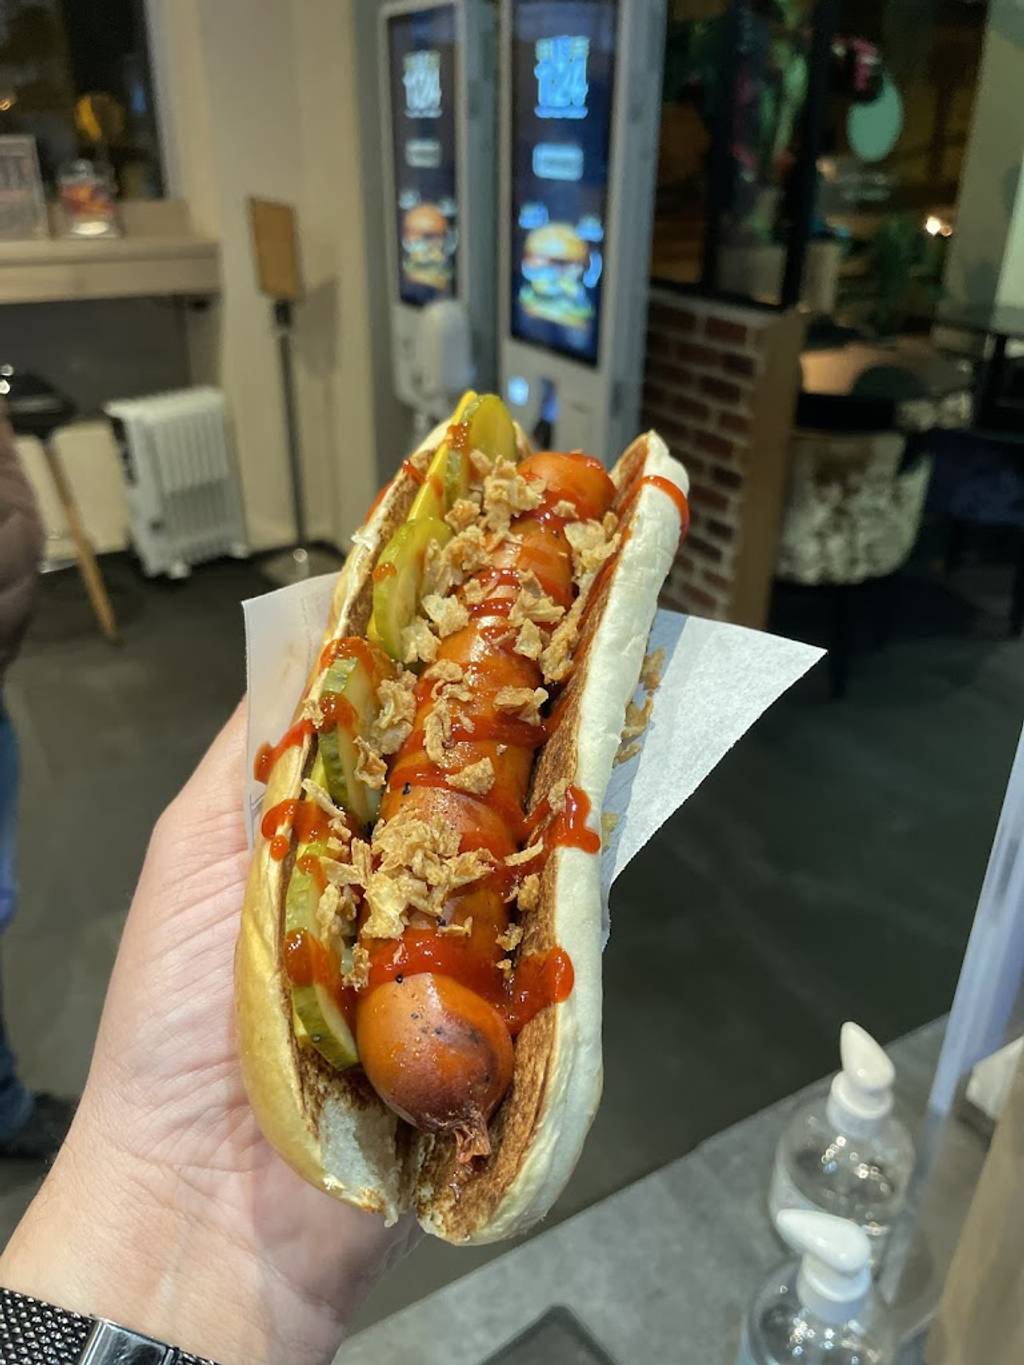 Le 124 Florange Florange - Food Hot dog bun Hot dog Bockwurst Watch